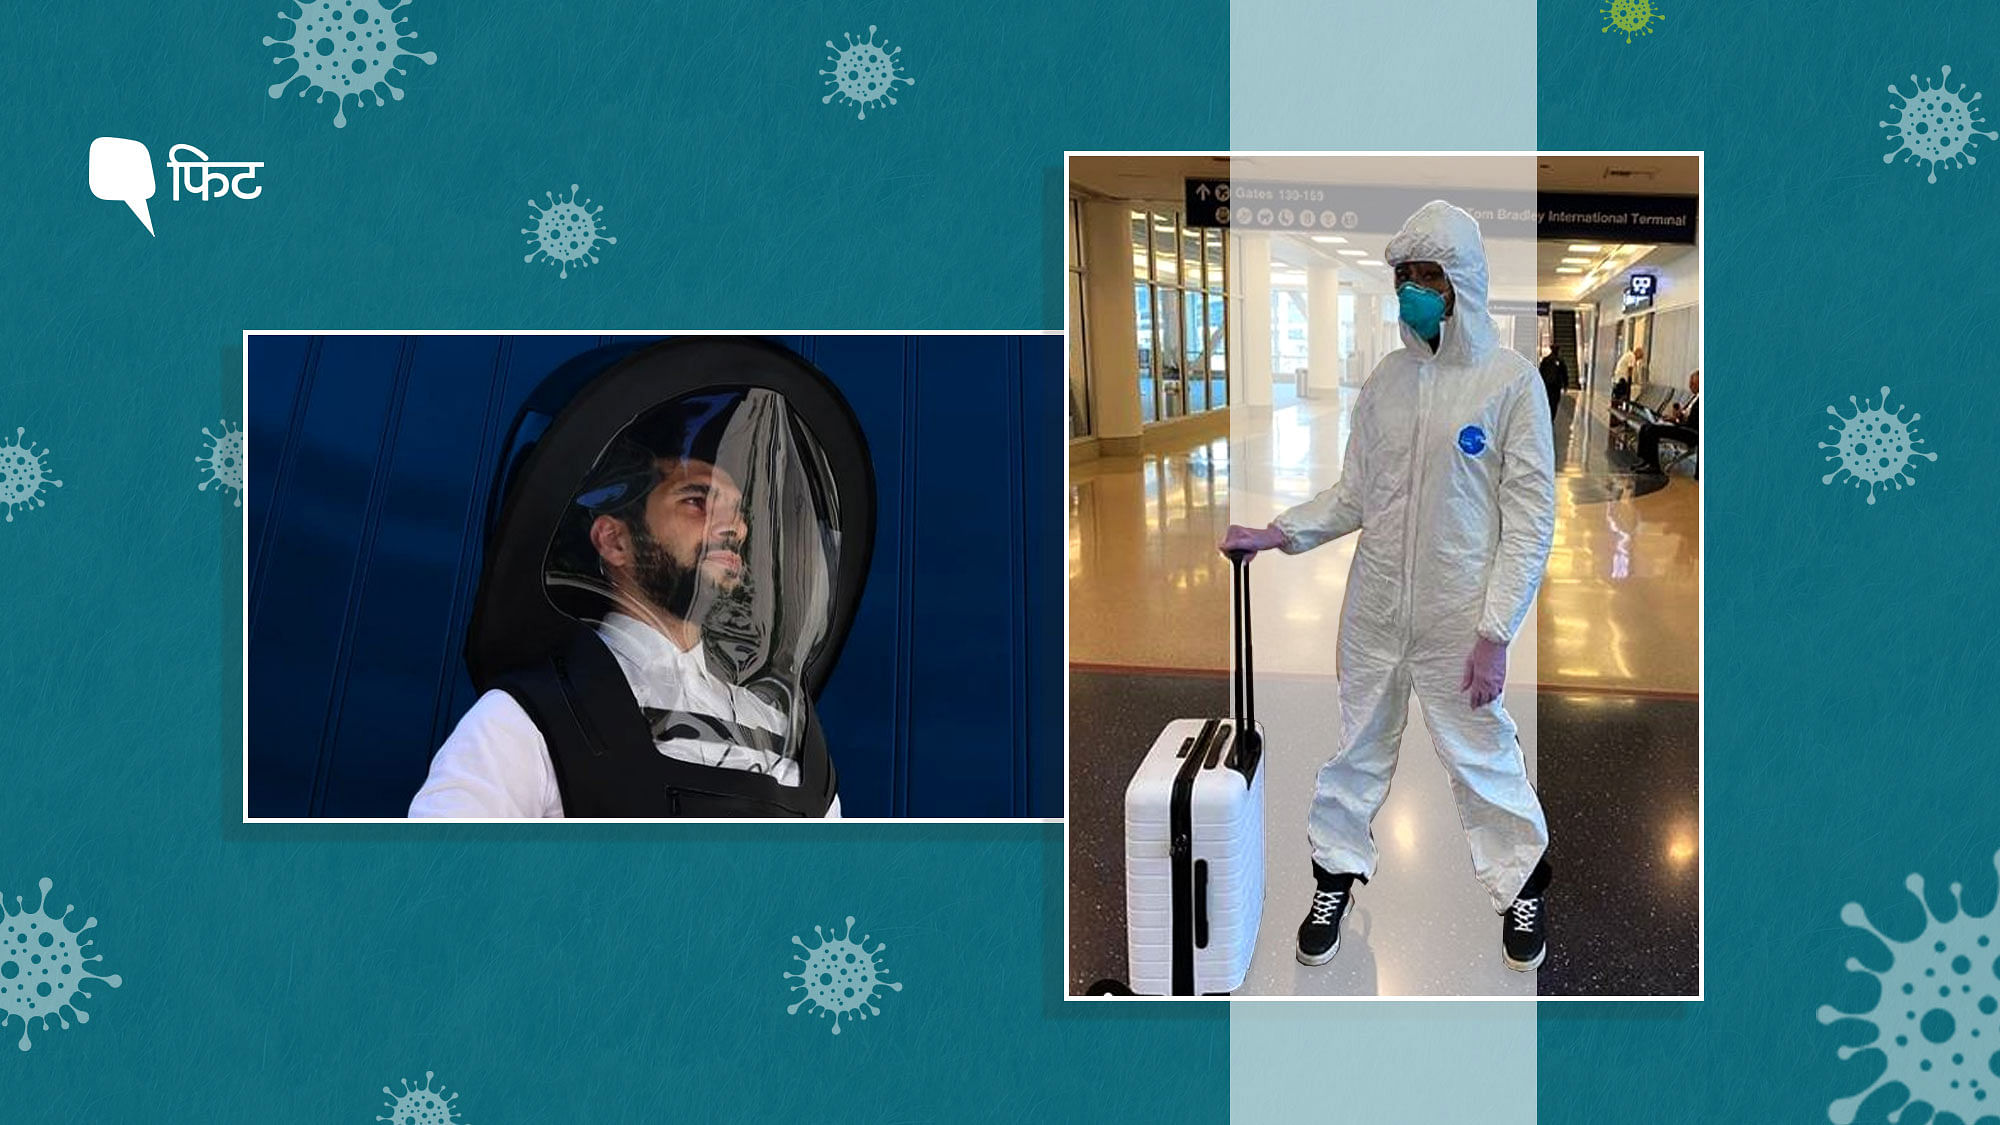 भारत में हवाई यात्रा के दौरान हजमत सूट पहनने का ट्रेंड दिख रहा है ताकि कोरोना वायरस से बचाव हो सके